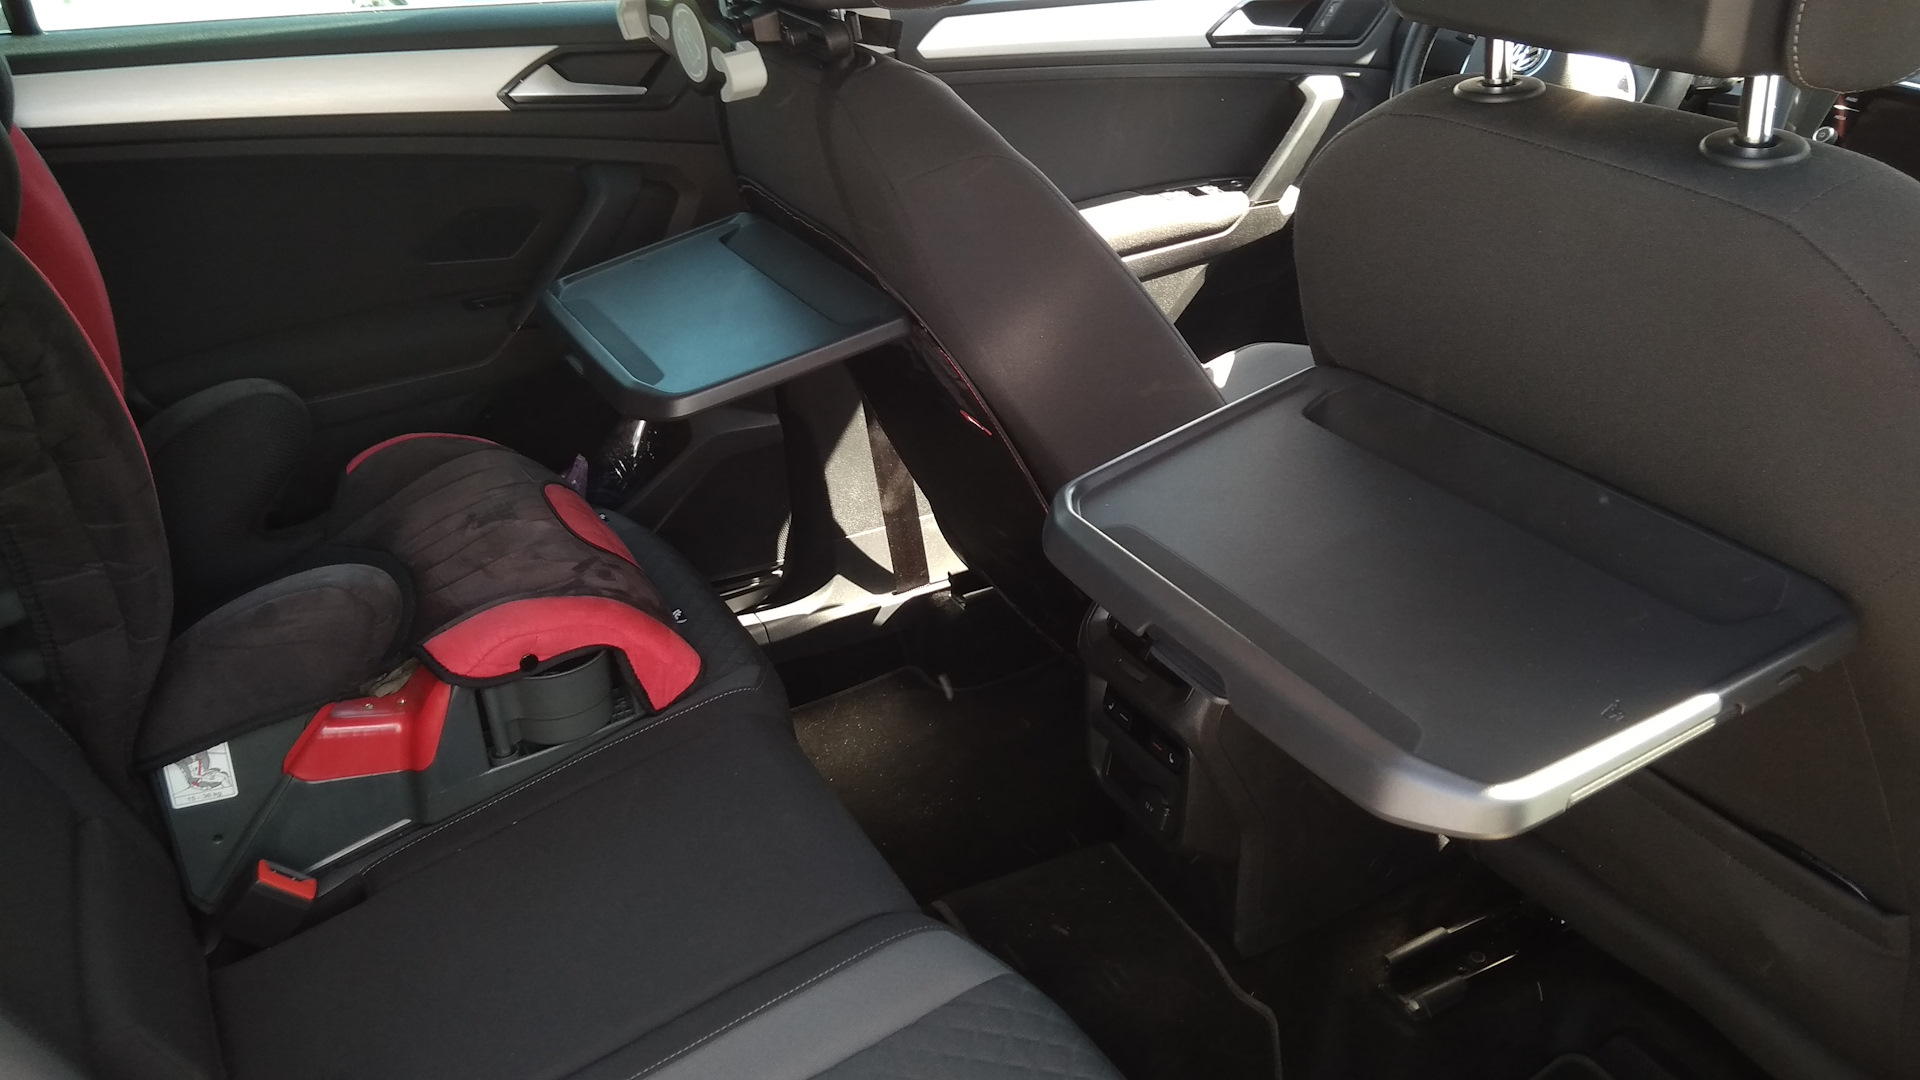 Столик на спинку сидения. VW Tiguan столик в сиденье. Volkswagen Tiguan 2023 заднее сидение. Бардачок под передние сиденья Фольксваген Тигуан 2.